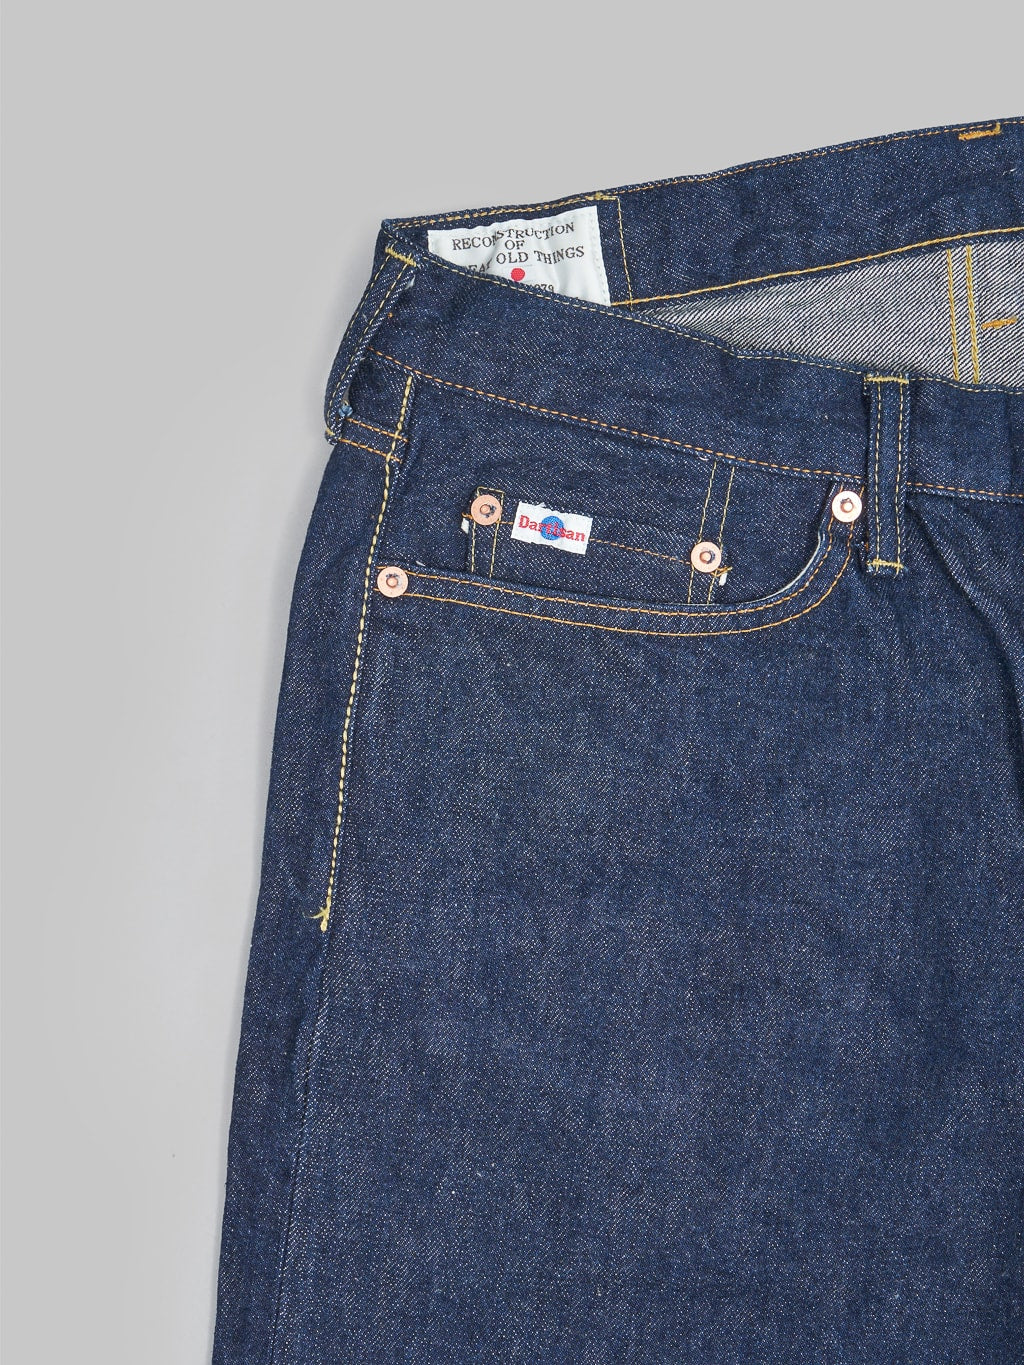 Studio D'Artisan natural indigo jeans front pocket details